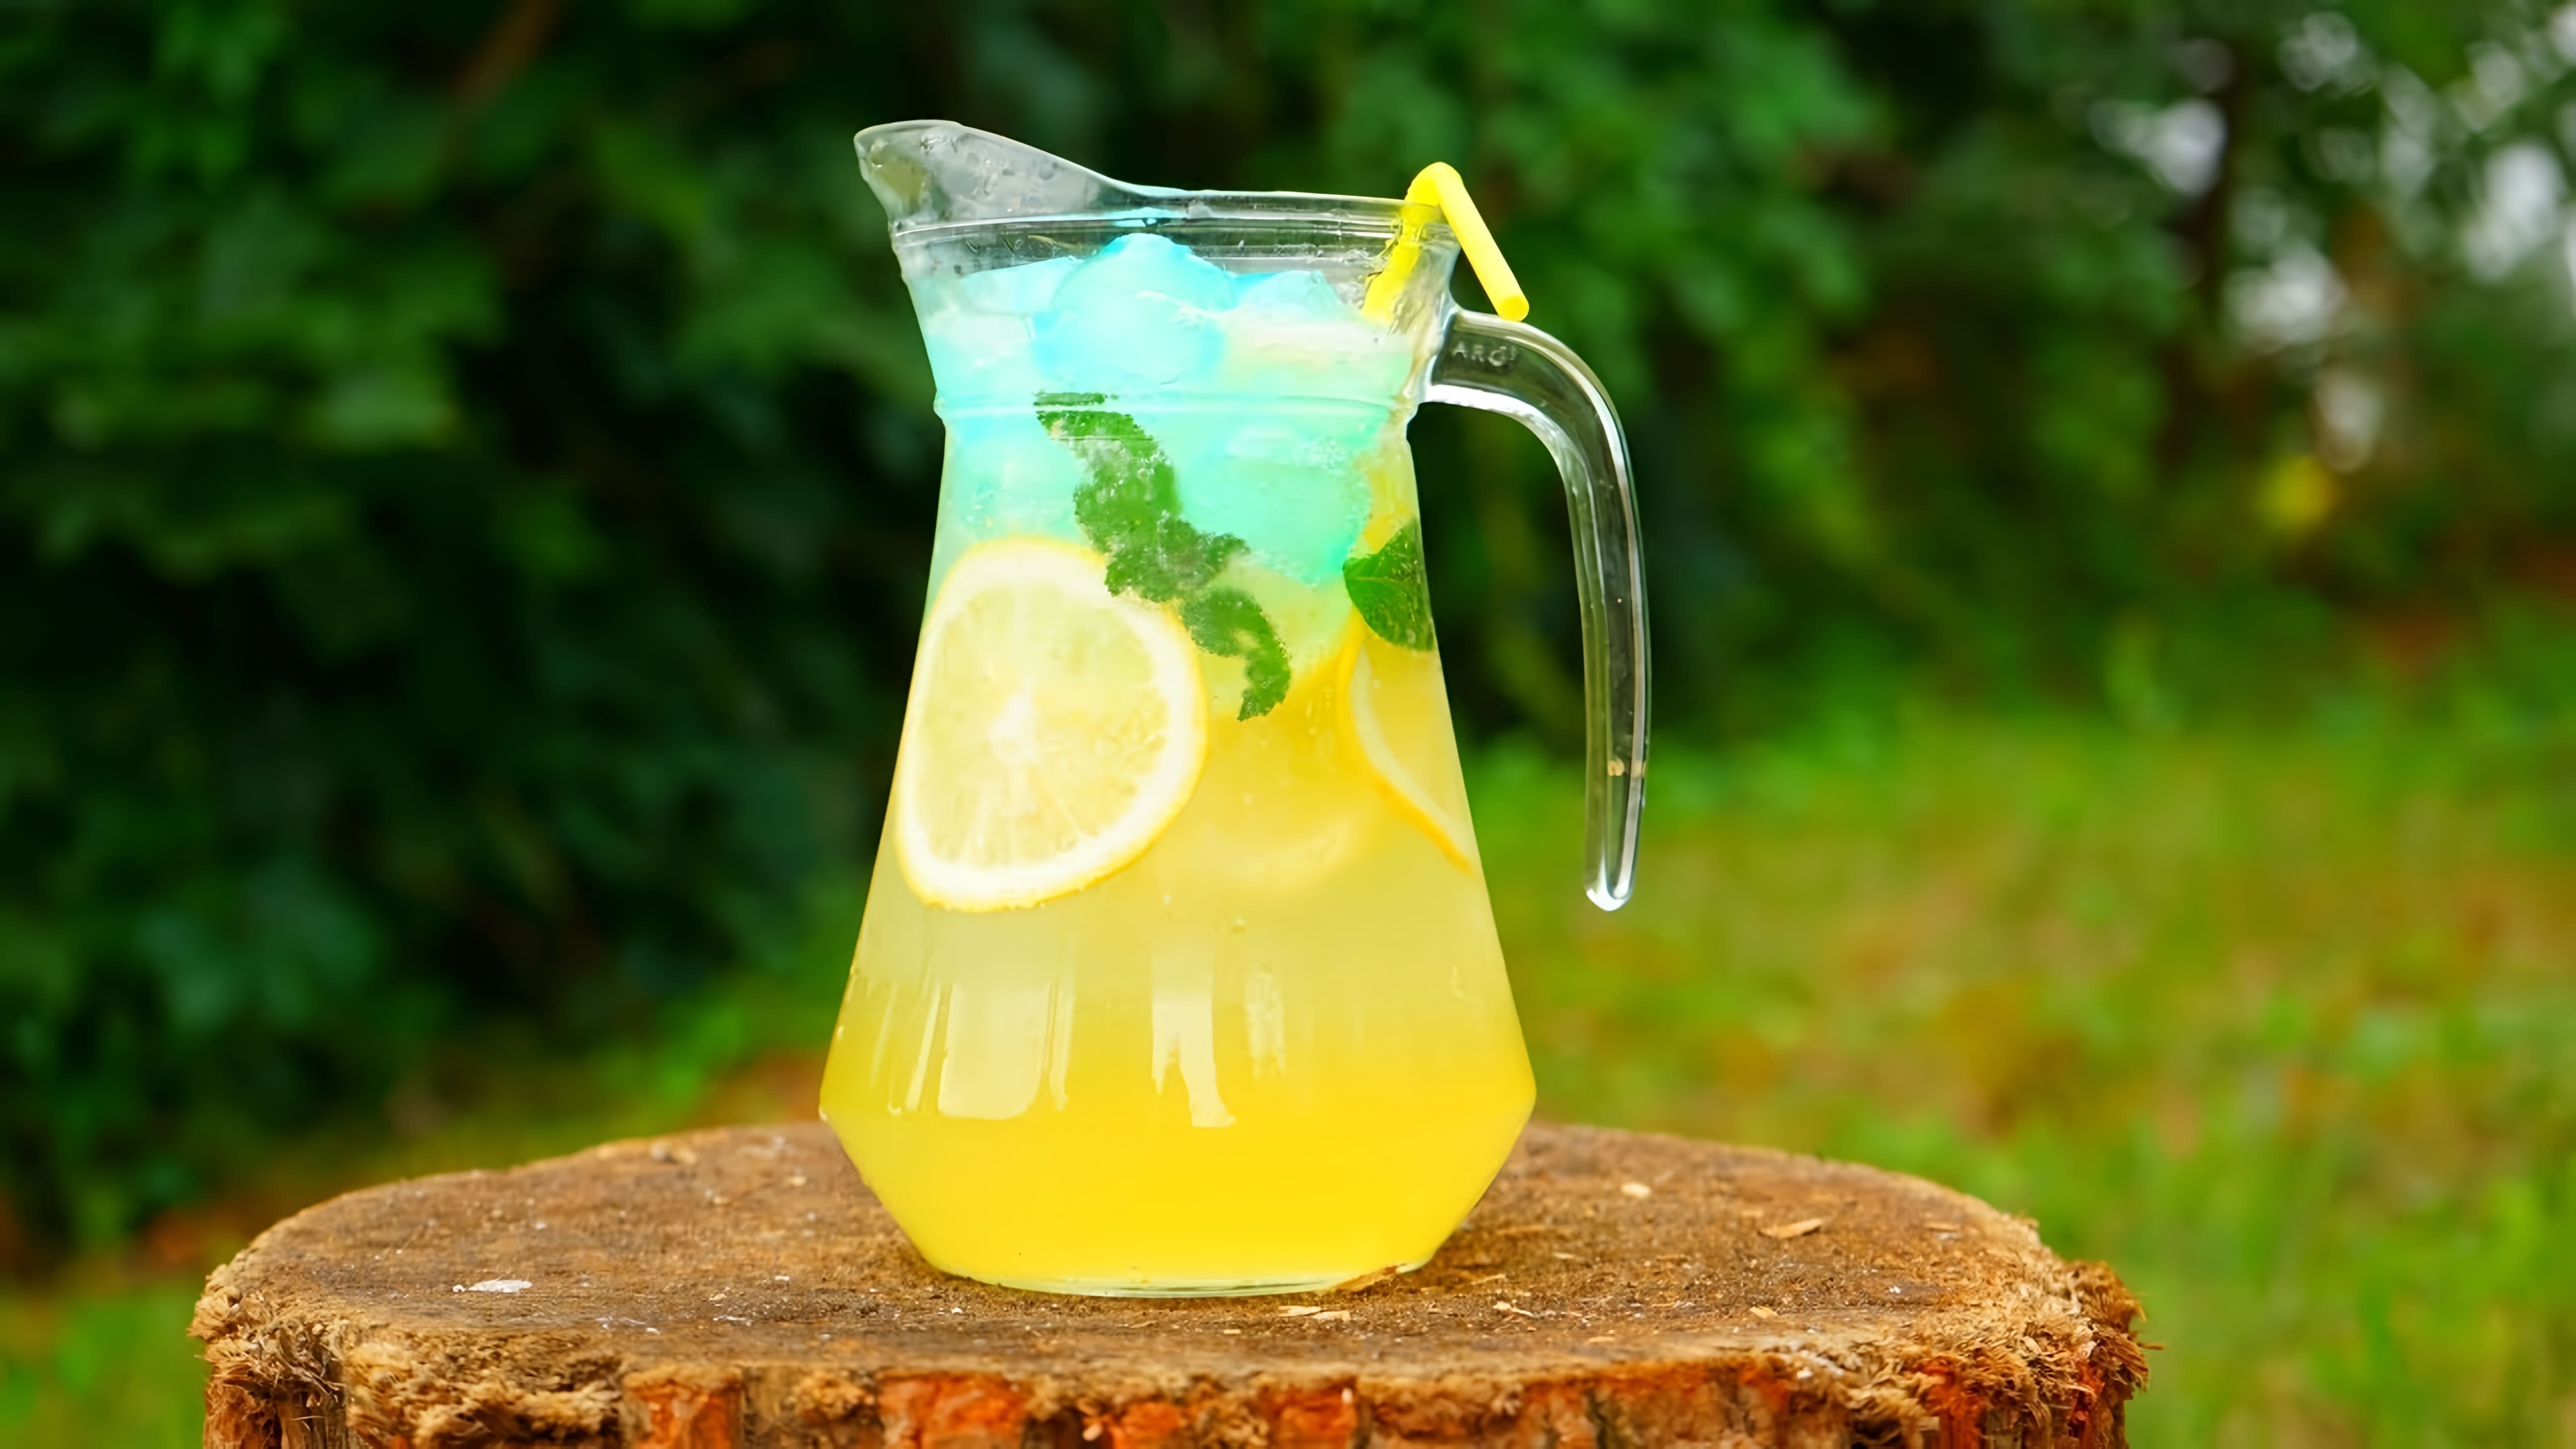 В этом видео-ролике вы увидите, как приготовить домашний лимонад, который будет не только вкусным, но и очень освежающим в жаркие летние дни